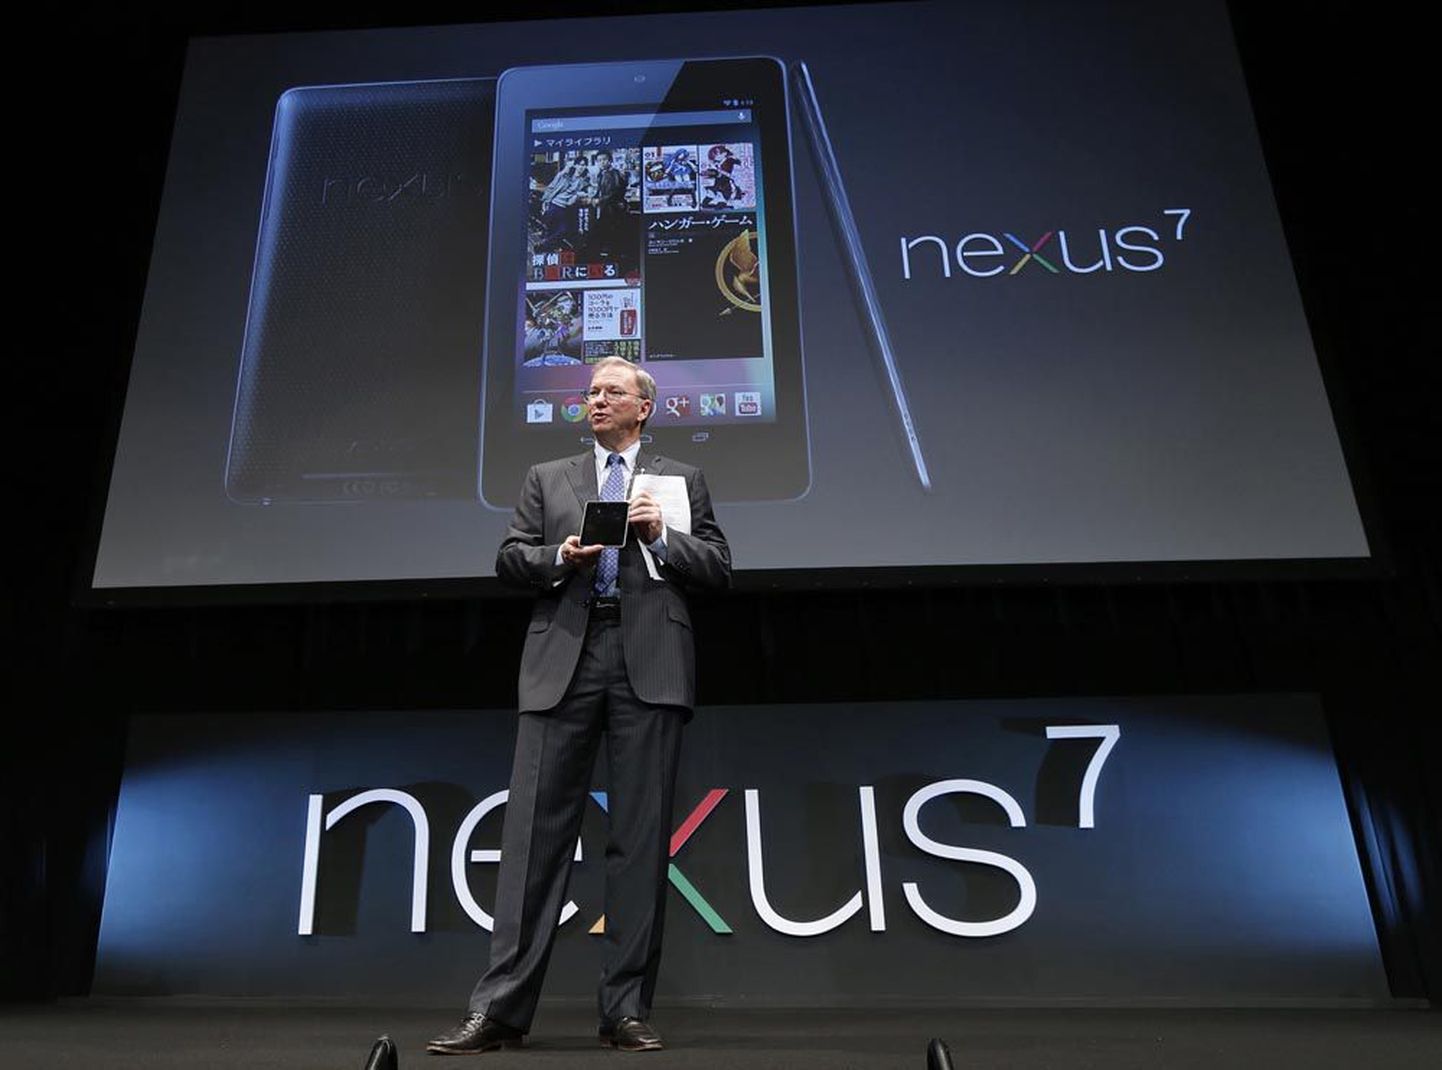 Google’i tegevjuht Eric Schmidt tutvustas kolm nädalat tagasi Tokyos Nexus 7 tahvelarvutit, millega asub konkureerima oodatav väiksem iPad, millega valmistub välja tulema Apple.